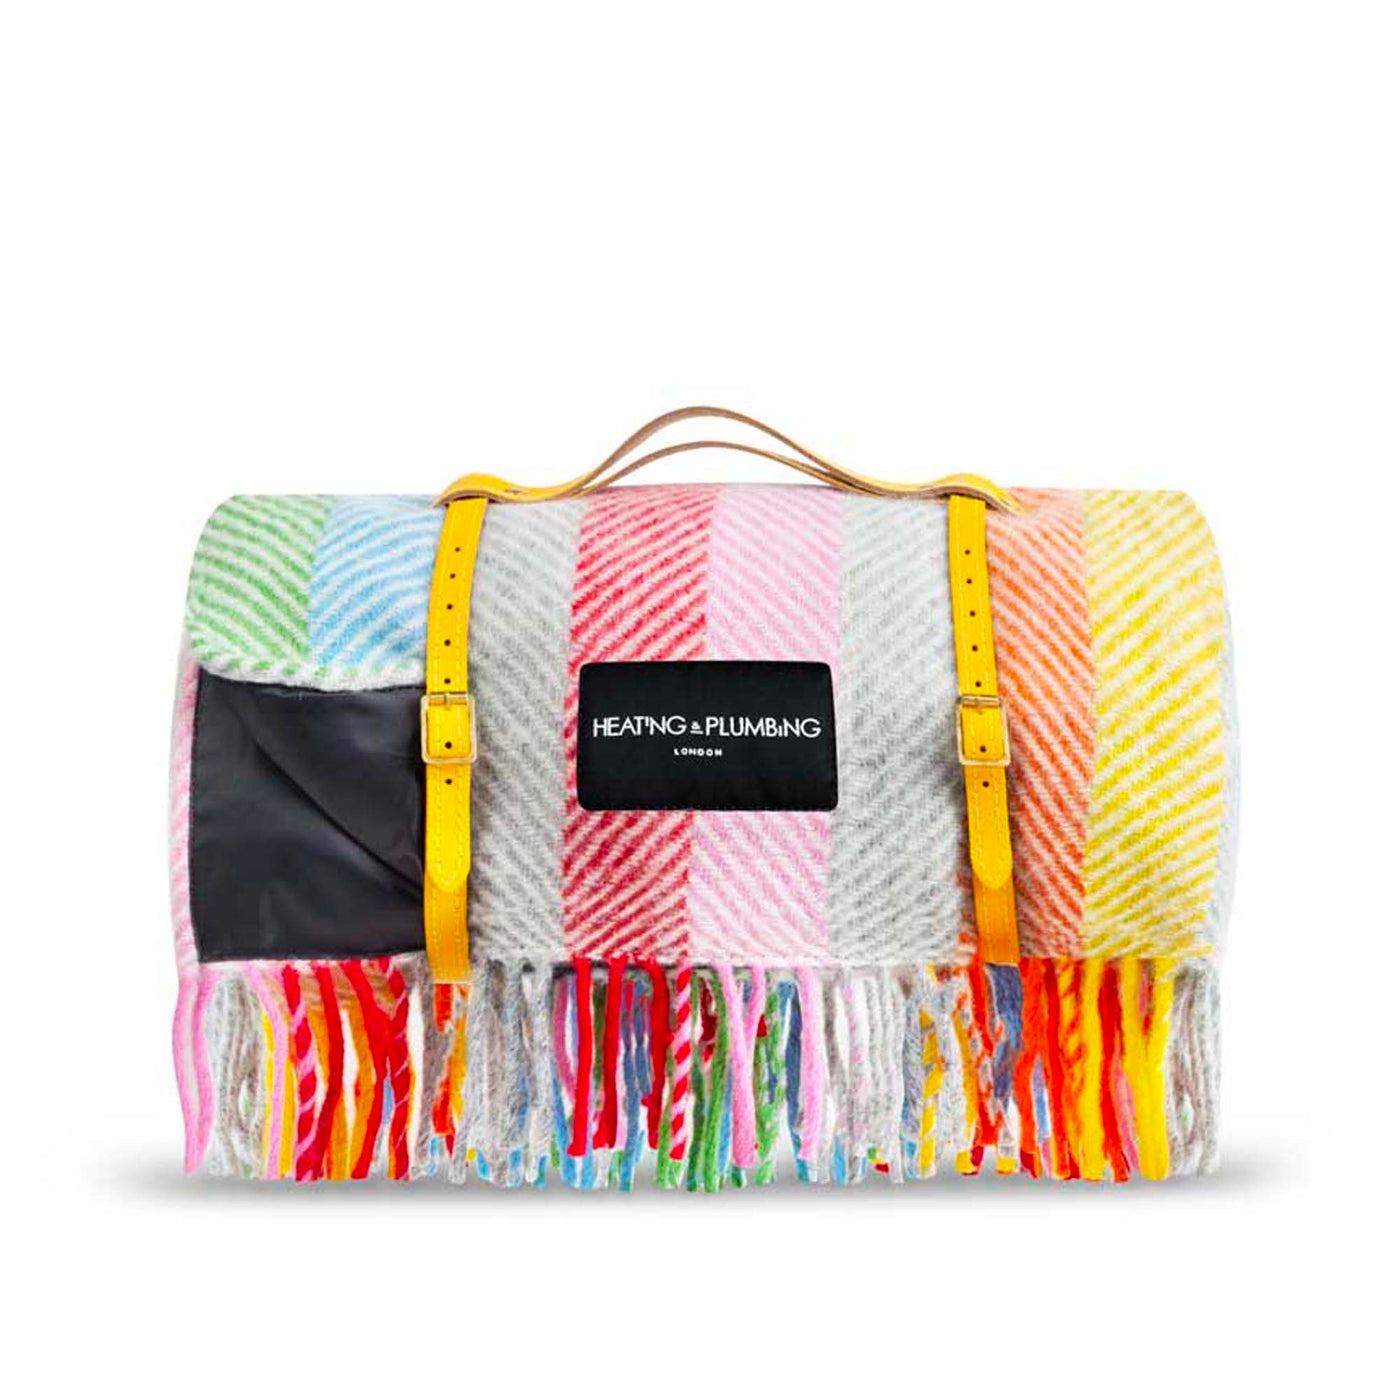 Wool Waterproof Picnic Blanket - Rainbow , Heating & Plumbing London, Blankets + Throws- Julia Moss Designs